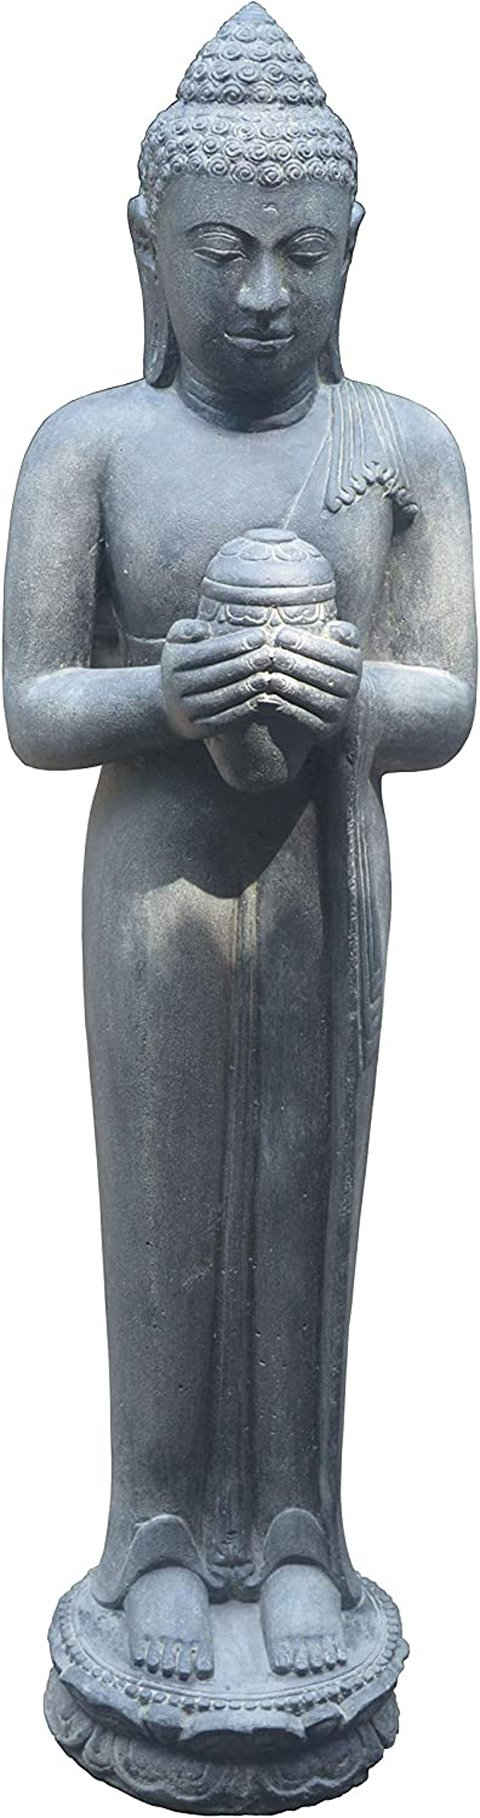 Krines Home Dekofigur Große Buddha-Figur Steinbuddha 150 cm mit Lotus-Gefäß Steinguss, stehende Steinfigur/Skulptur für Haus und Garten